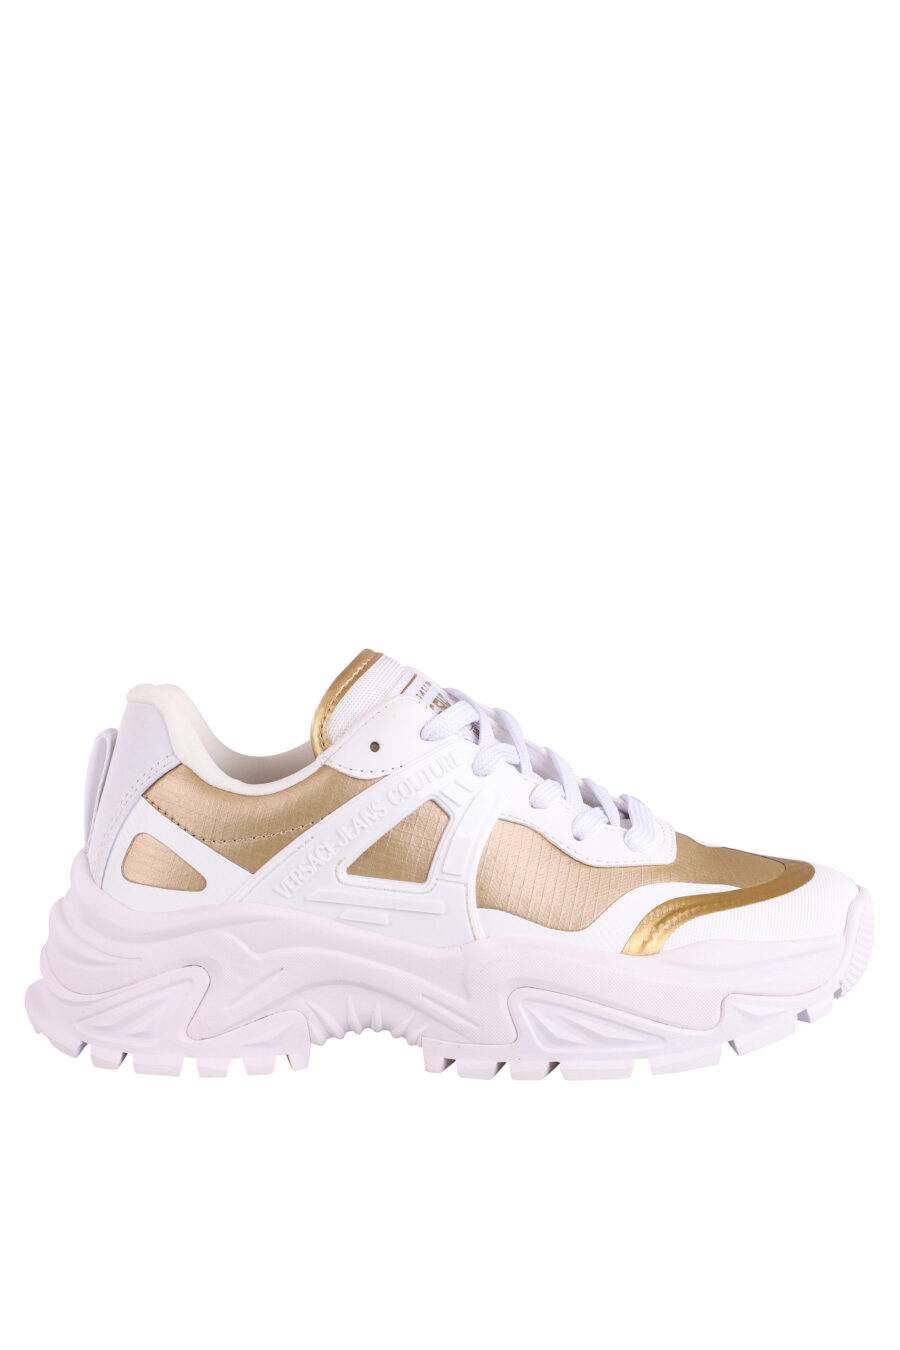 Zapatillas blancas con dorado y logo - IMG 9020